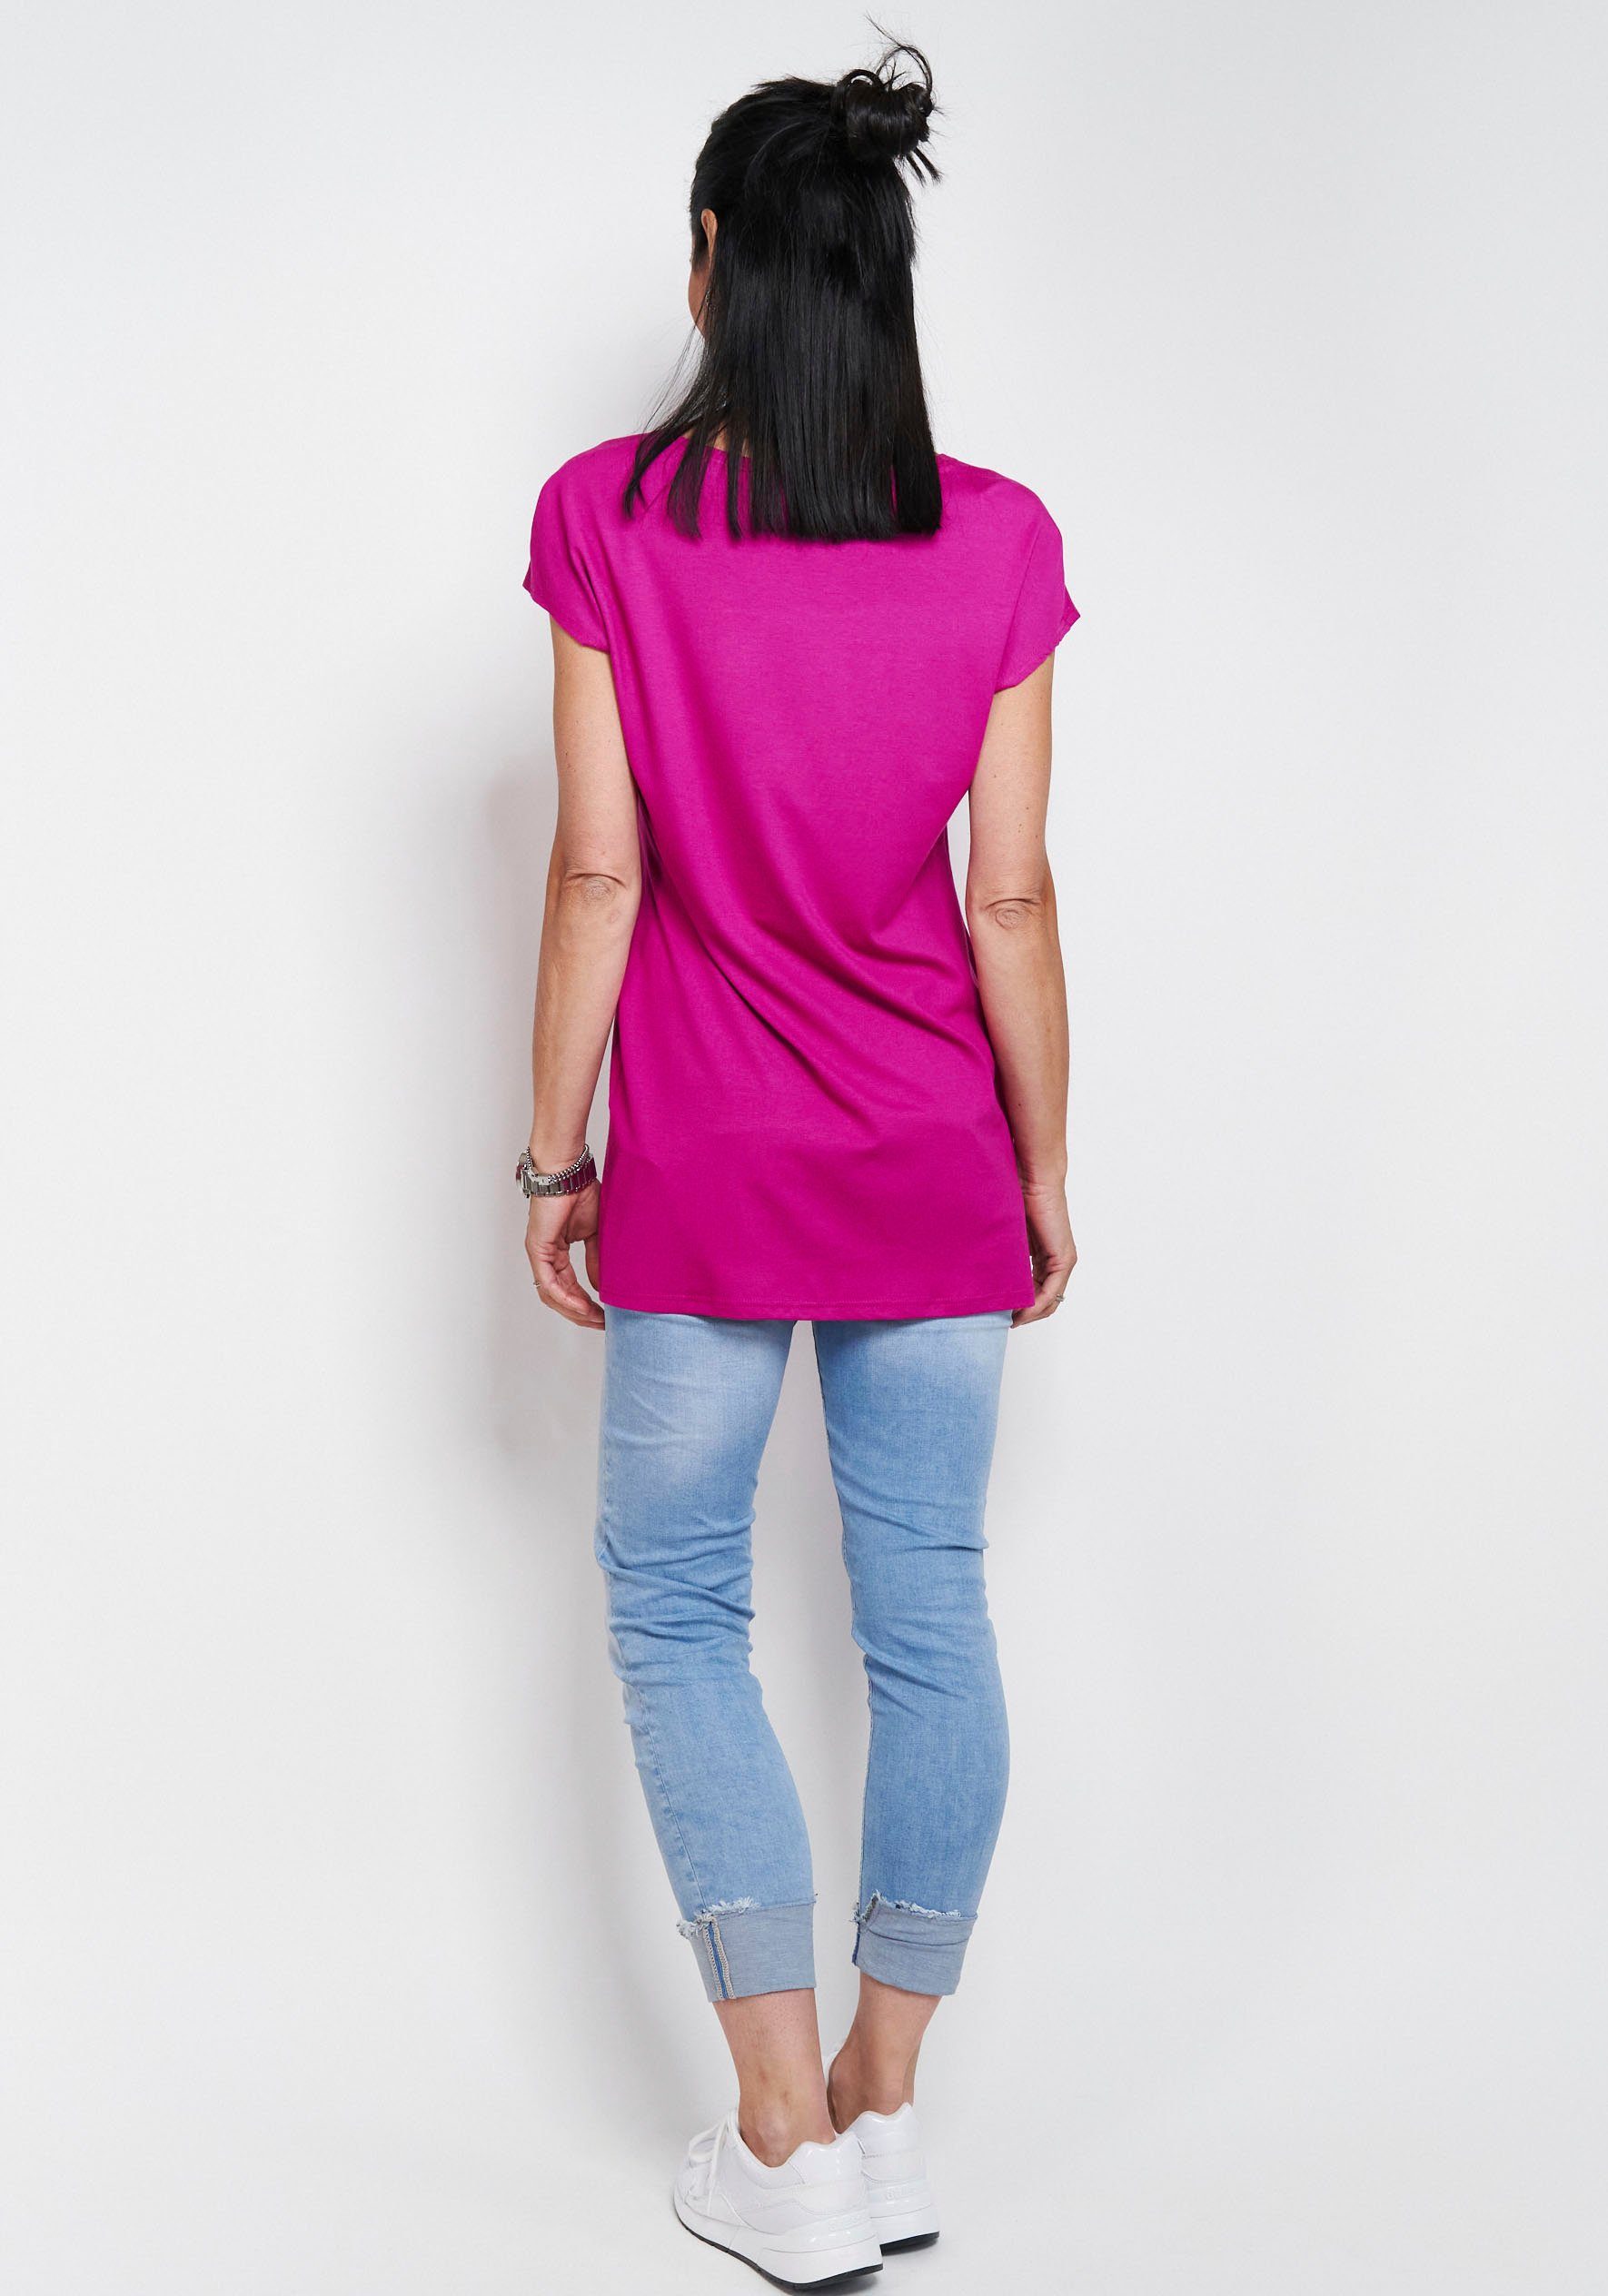 Seidel Longshirt magenta Moden in schlichtem Design